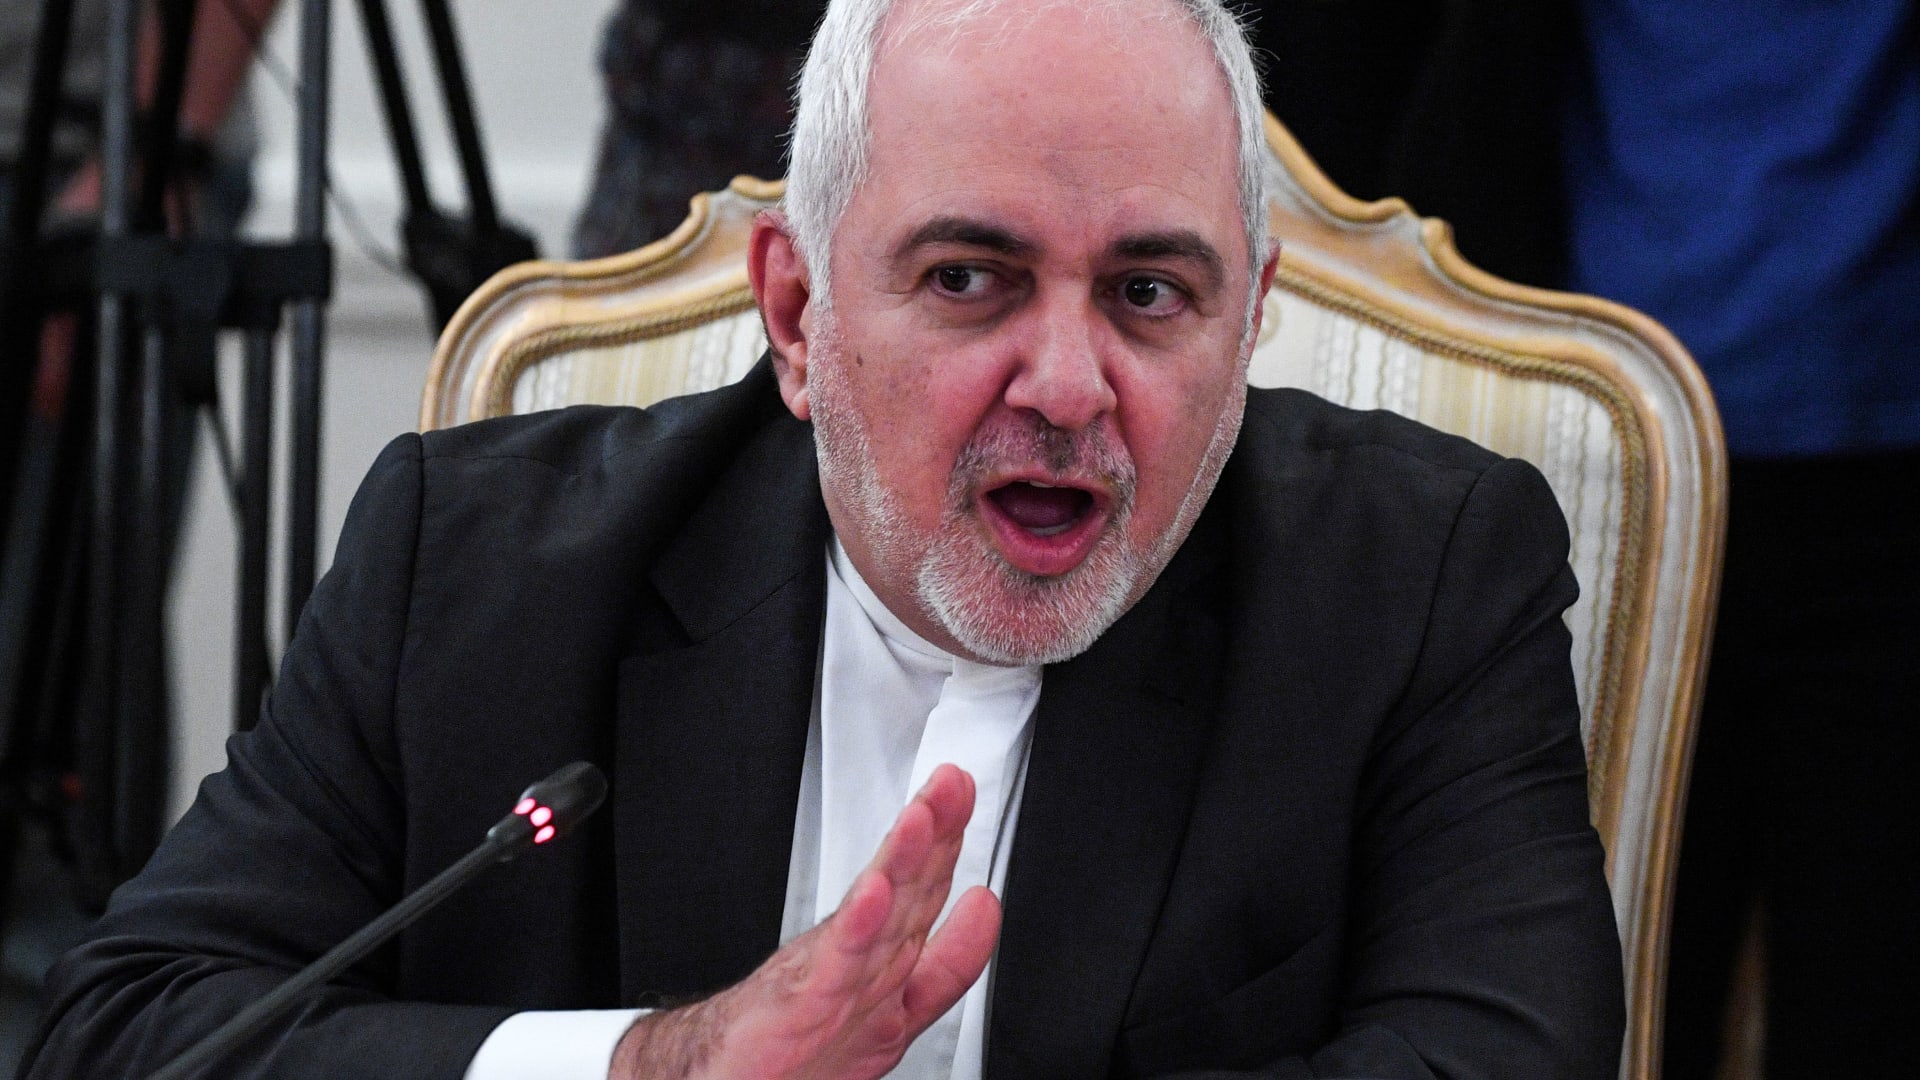 ظريف لـCNN عن المفاوضات مع واشنطن: إيران أكثر حكمة من الوقوع في الفخ